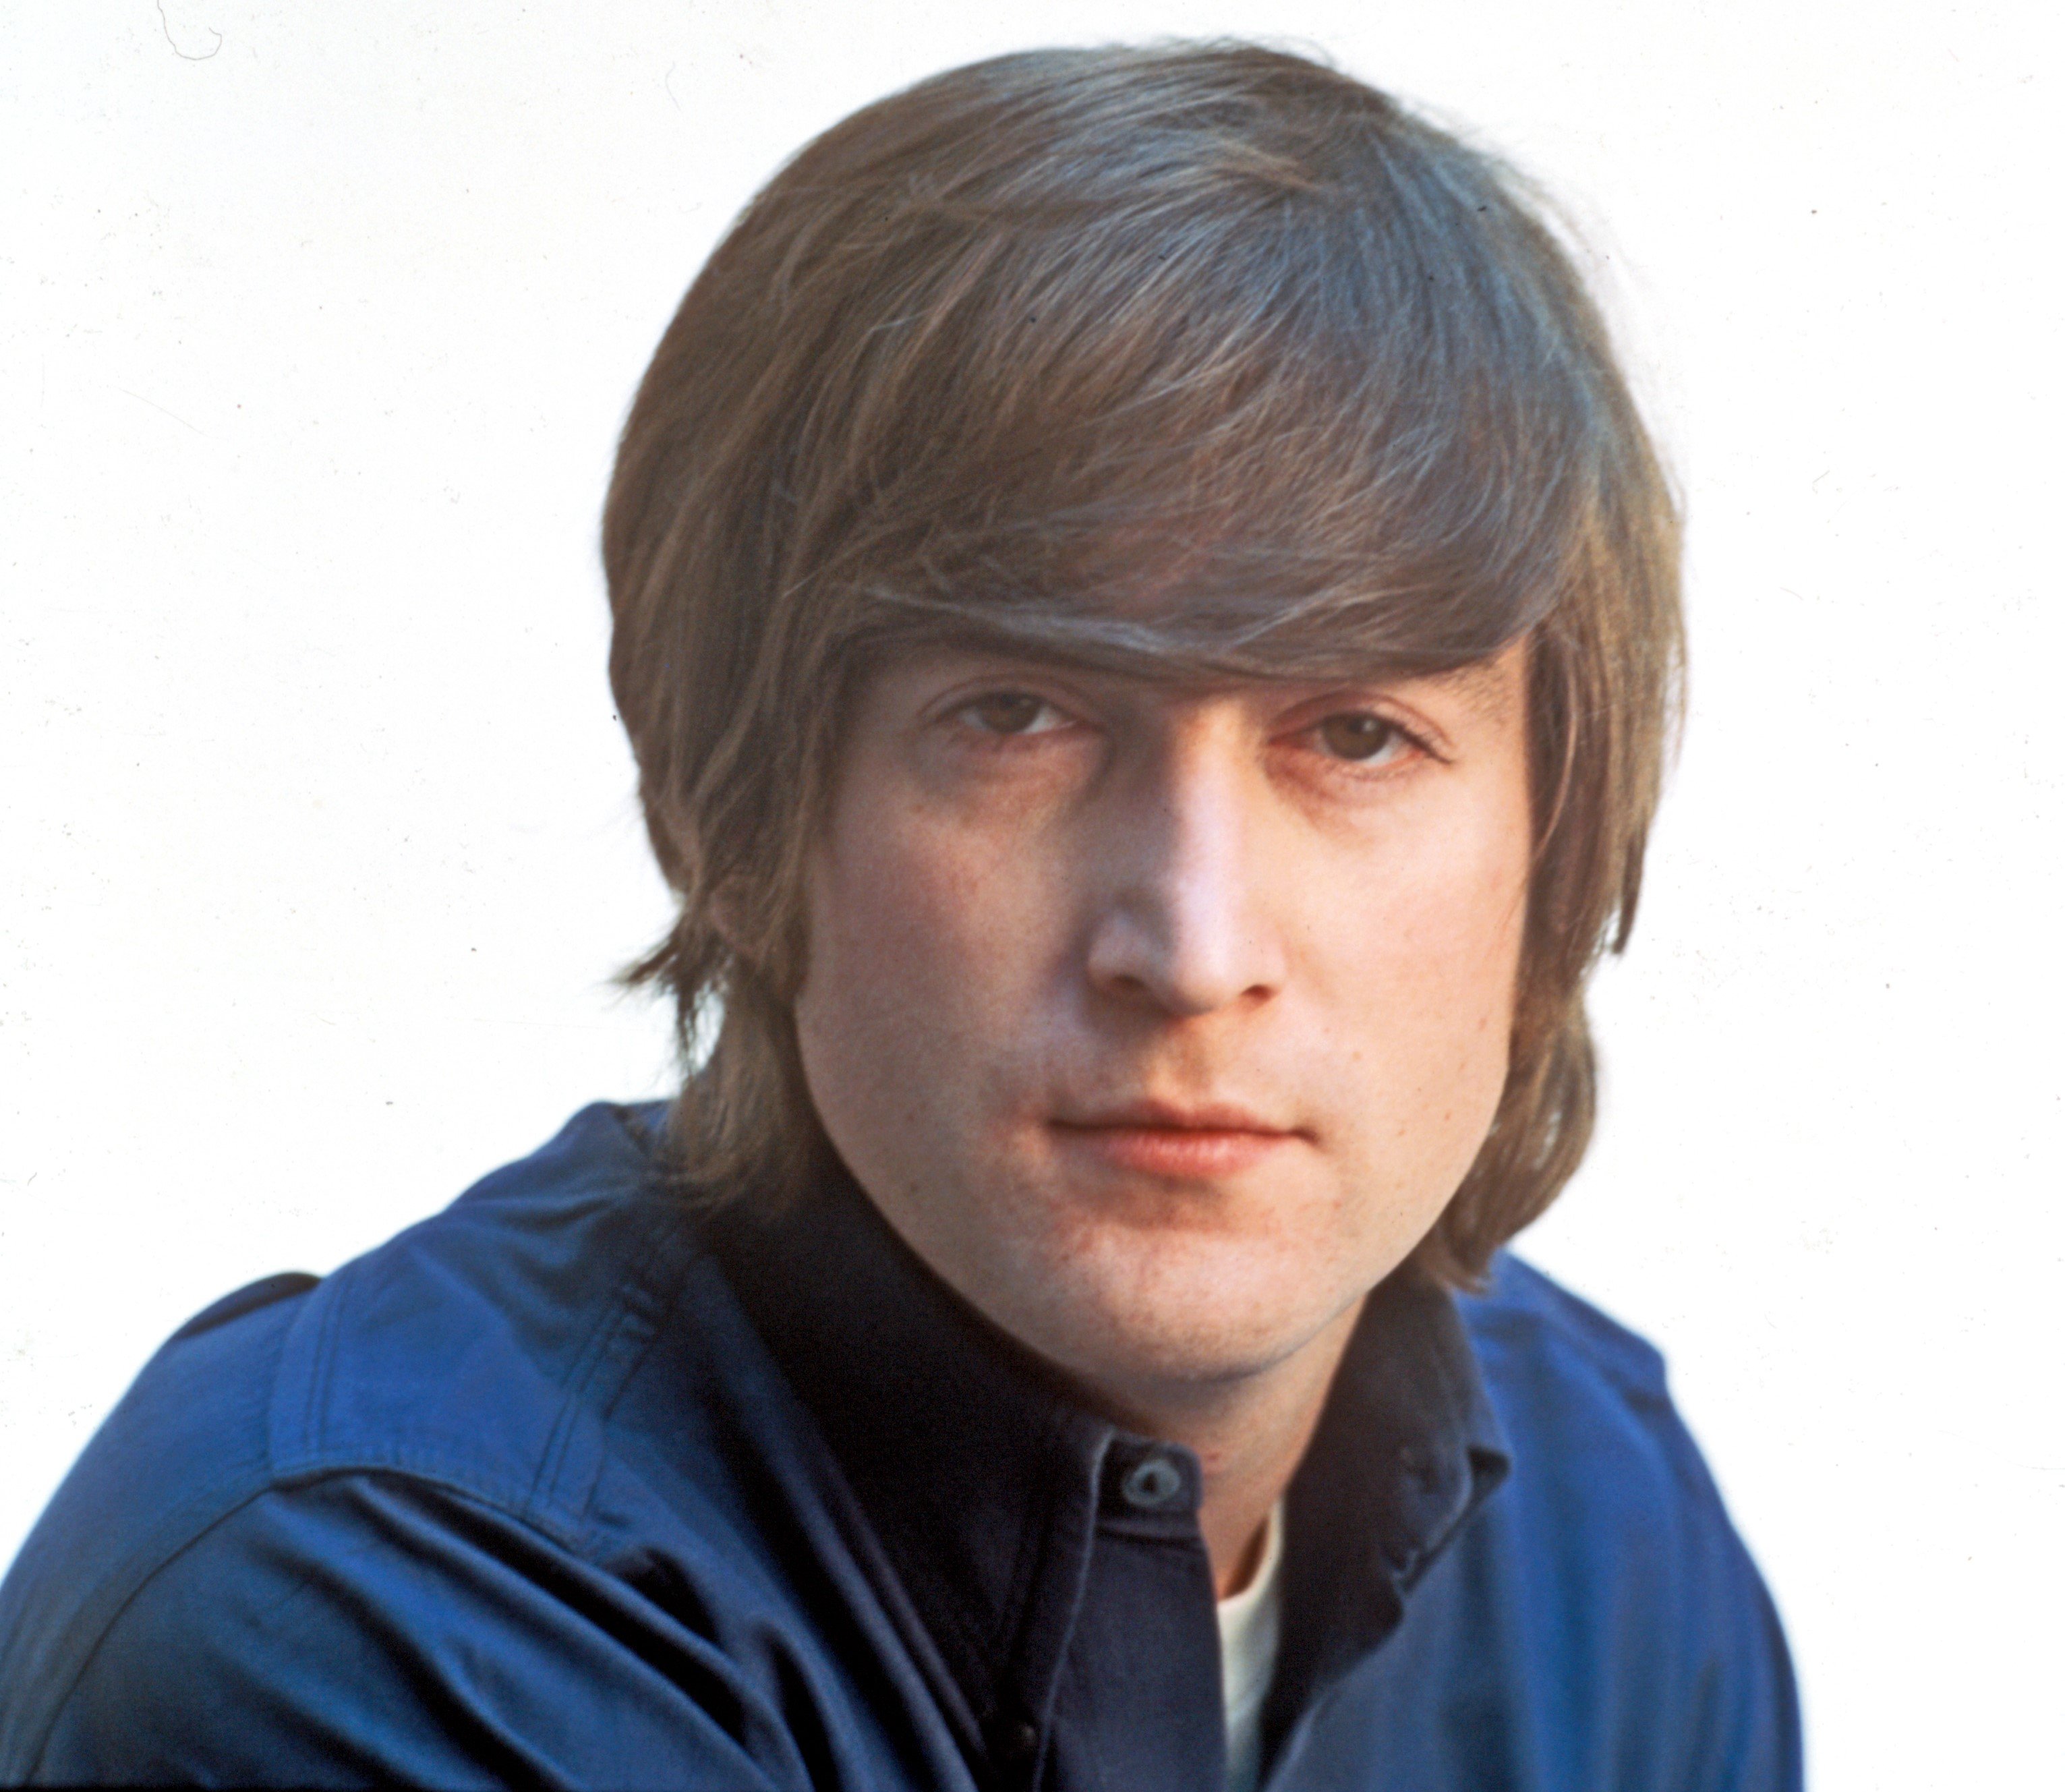 John Lennon wears blue